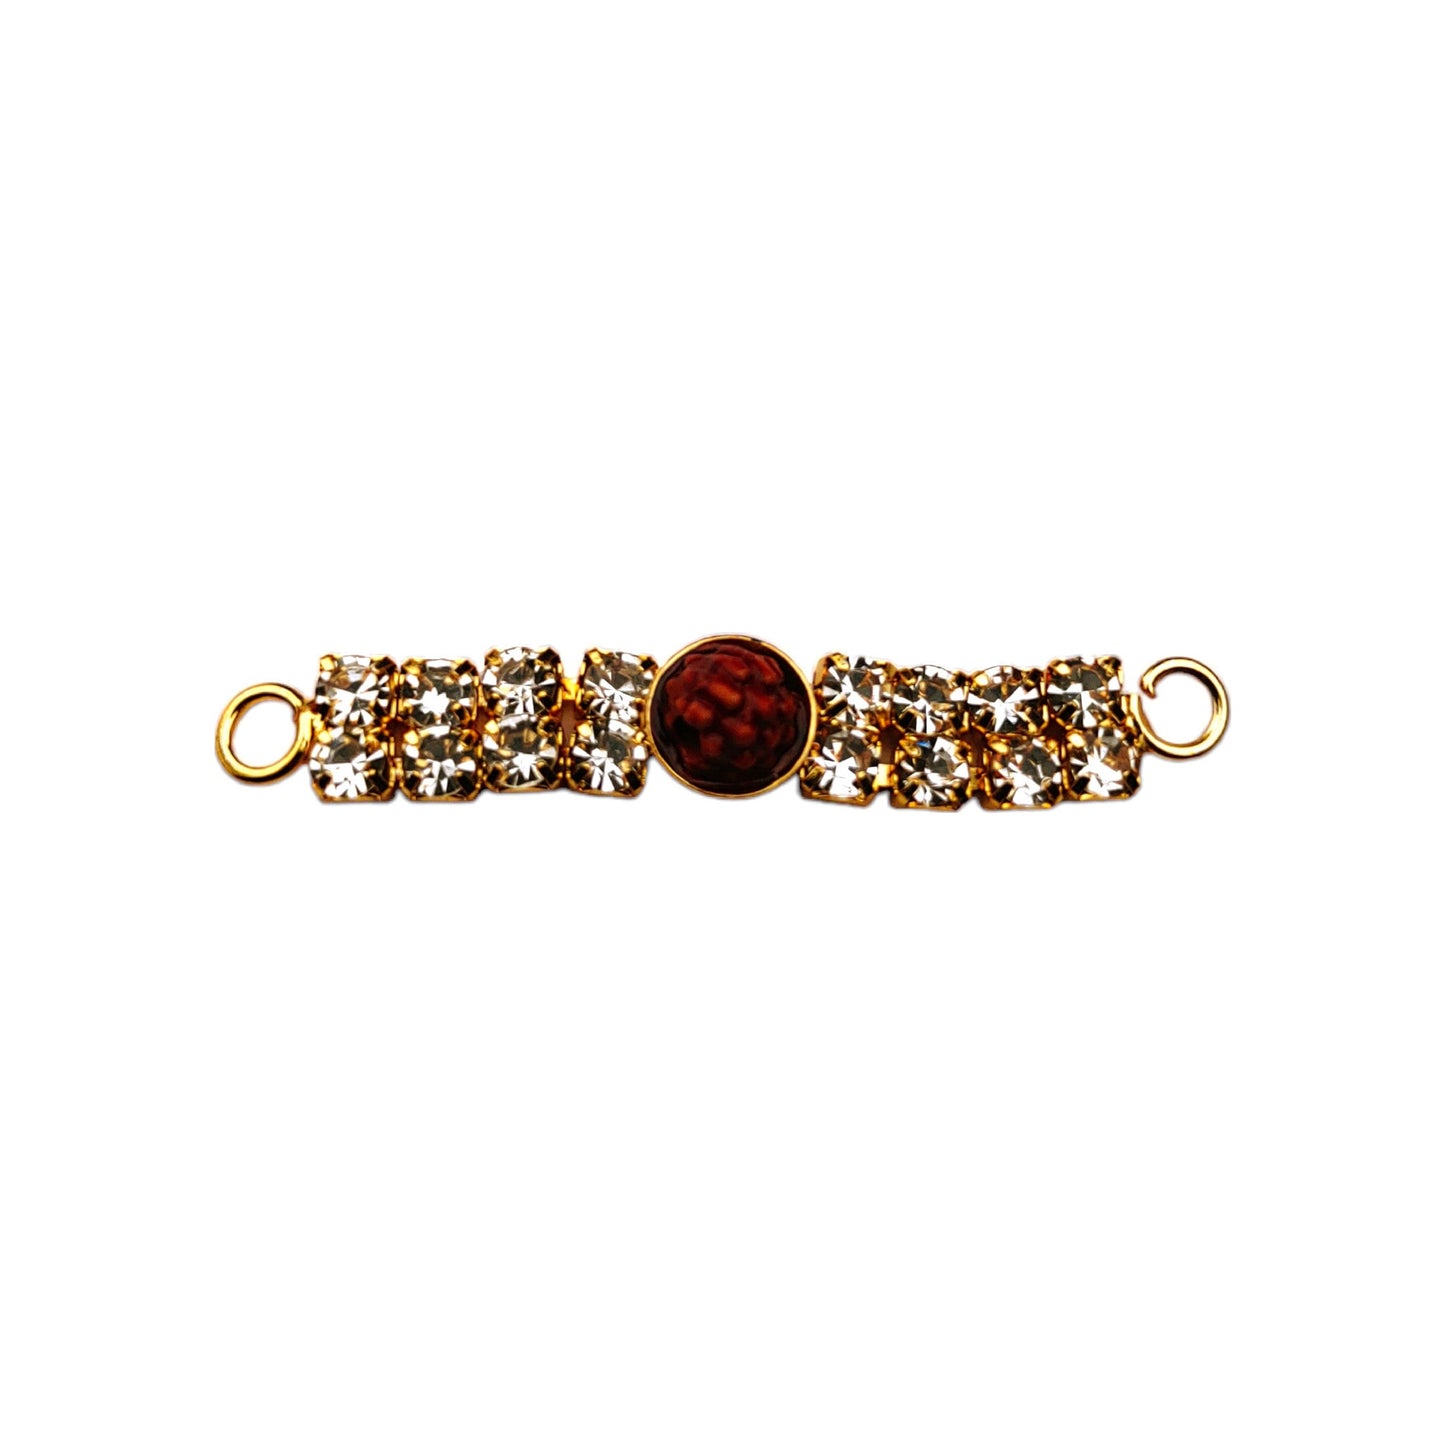 Rinstone Rudraksha Bracelet Motif for Crafting or Decoration, Jewellery Making